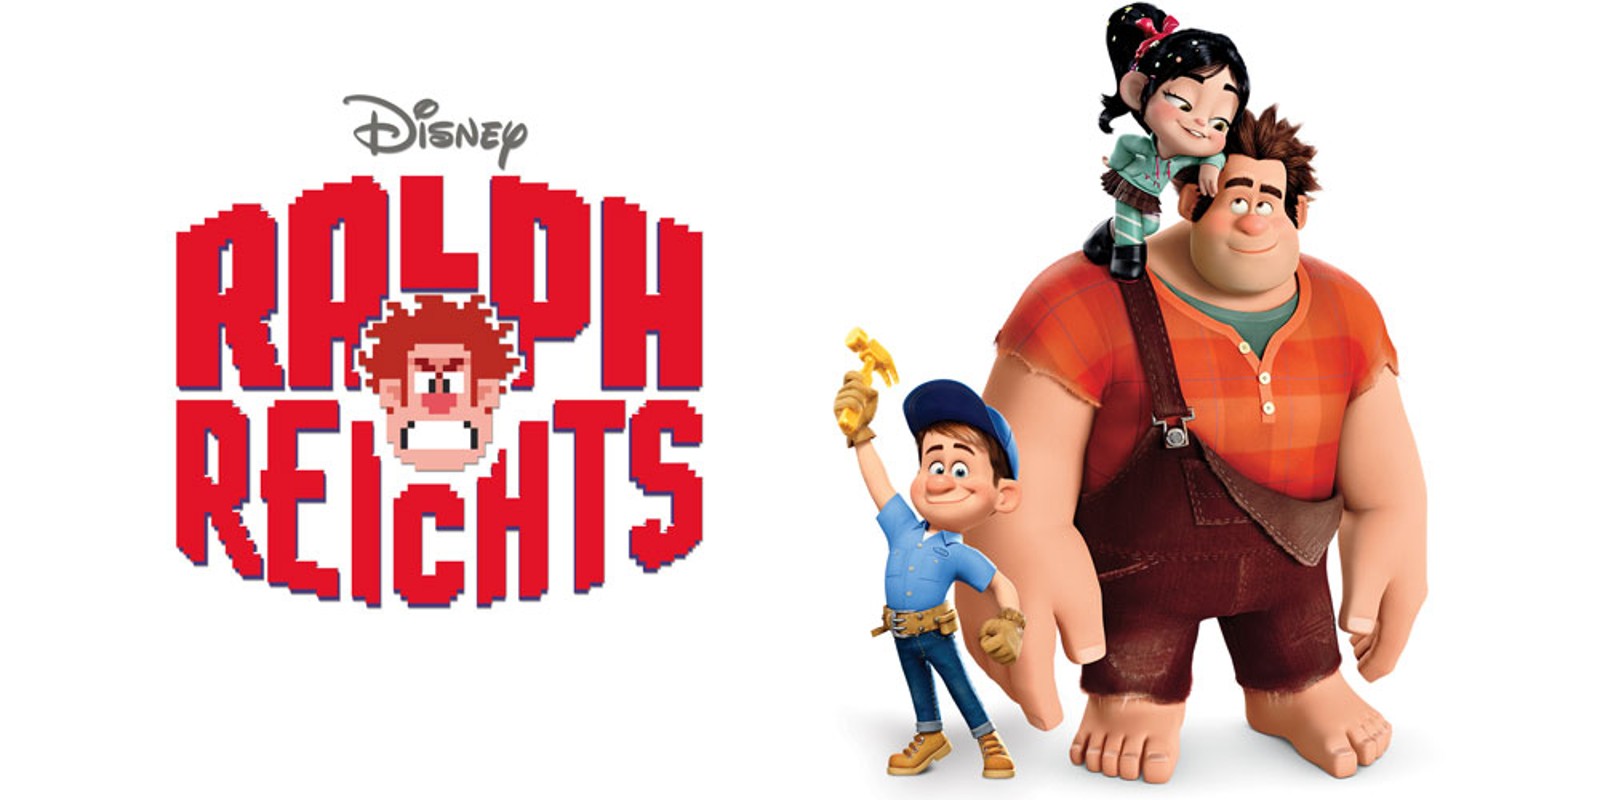 Disney Ralph Reichts